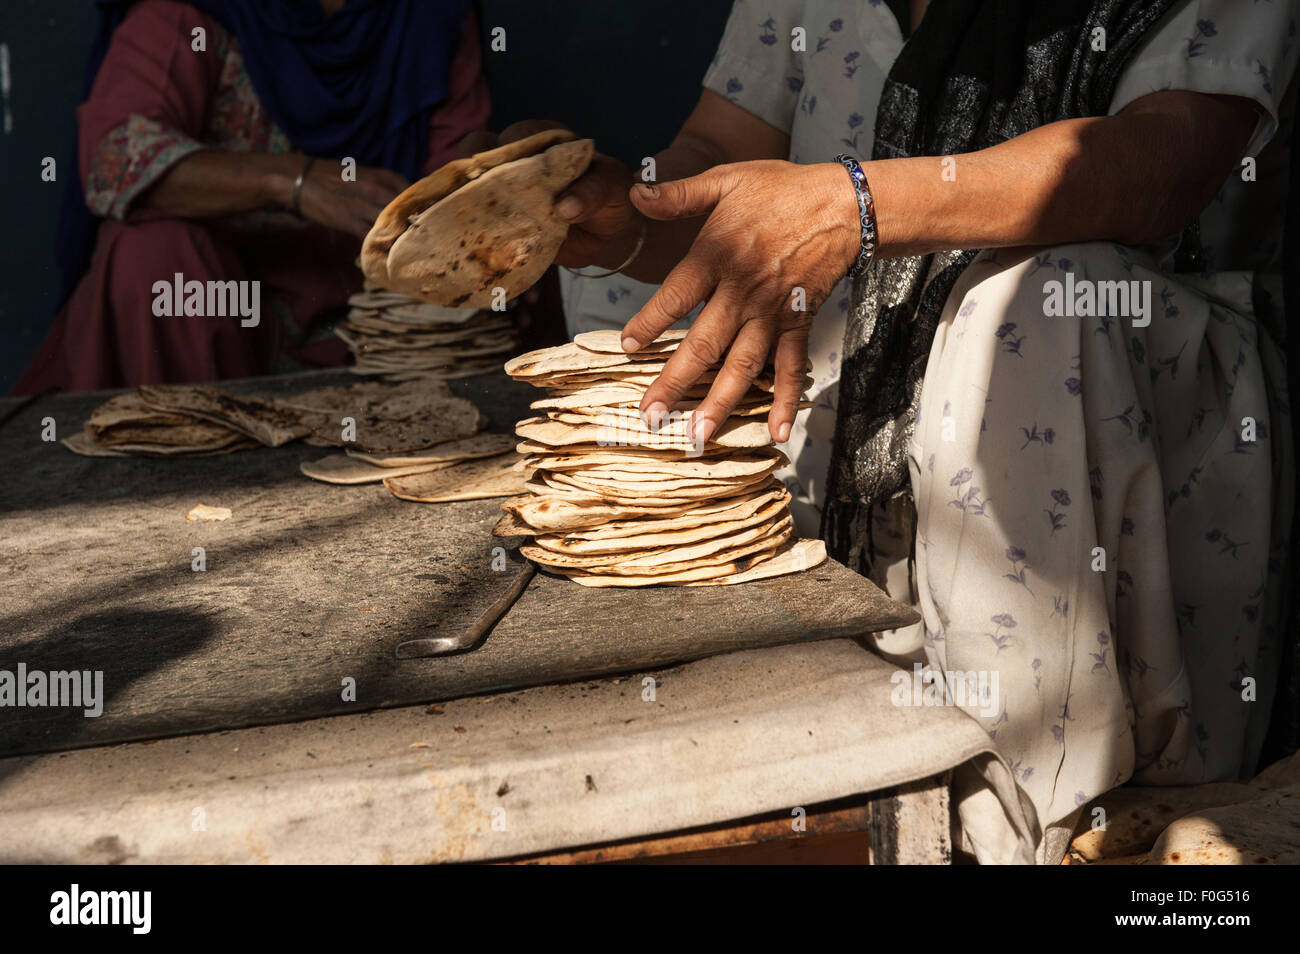 Amritsar, Punjab, en Inde. Sri Harmandir Sahib Golden Temple. Les cheminées d'une femme dans les pains plats roti cuisine gratuite - langar - qui se nourrit des dizaines de milliers de personnes chaque jour. Banque D'Images